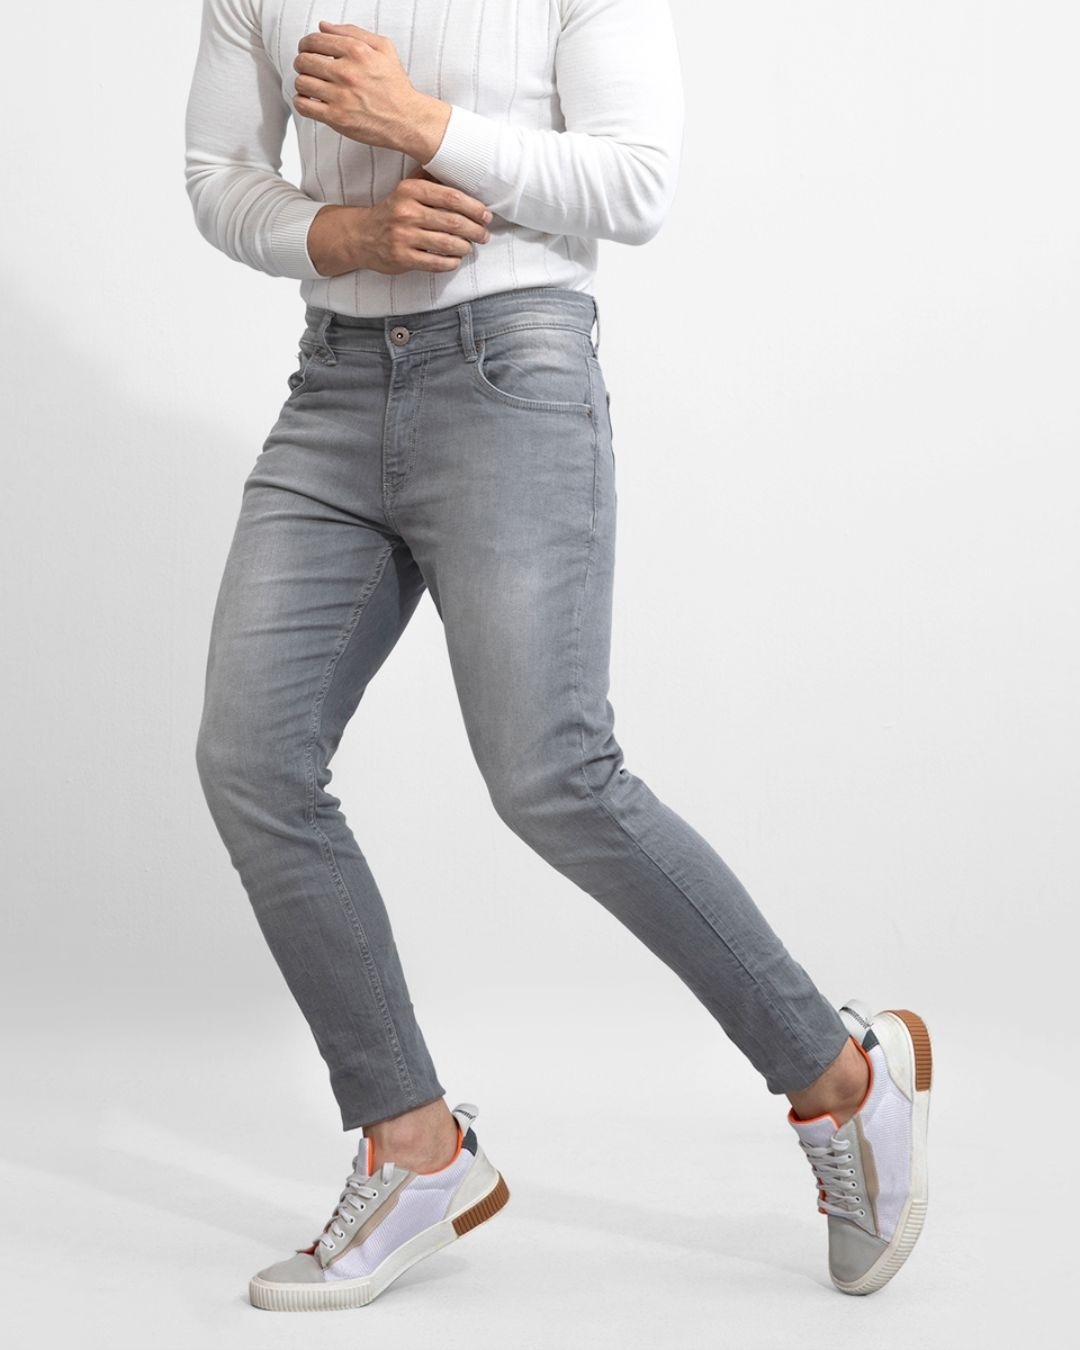 Buy Men's Grey Skinny Fit Jeans for Men Grey Online at Bewakoof